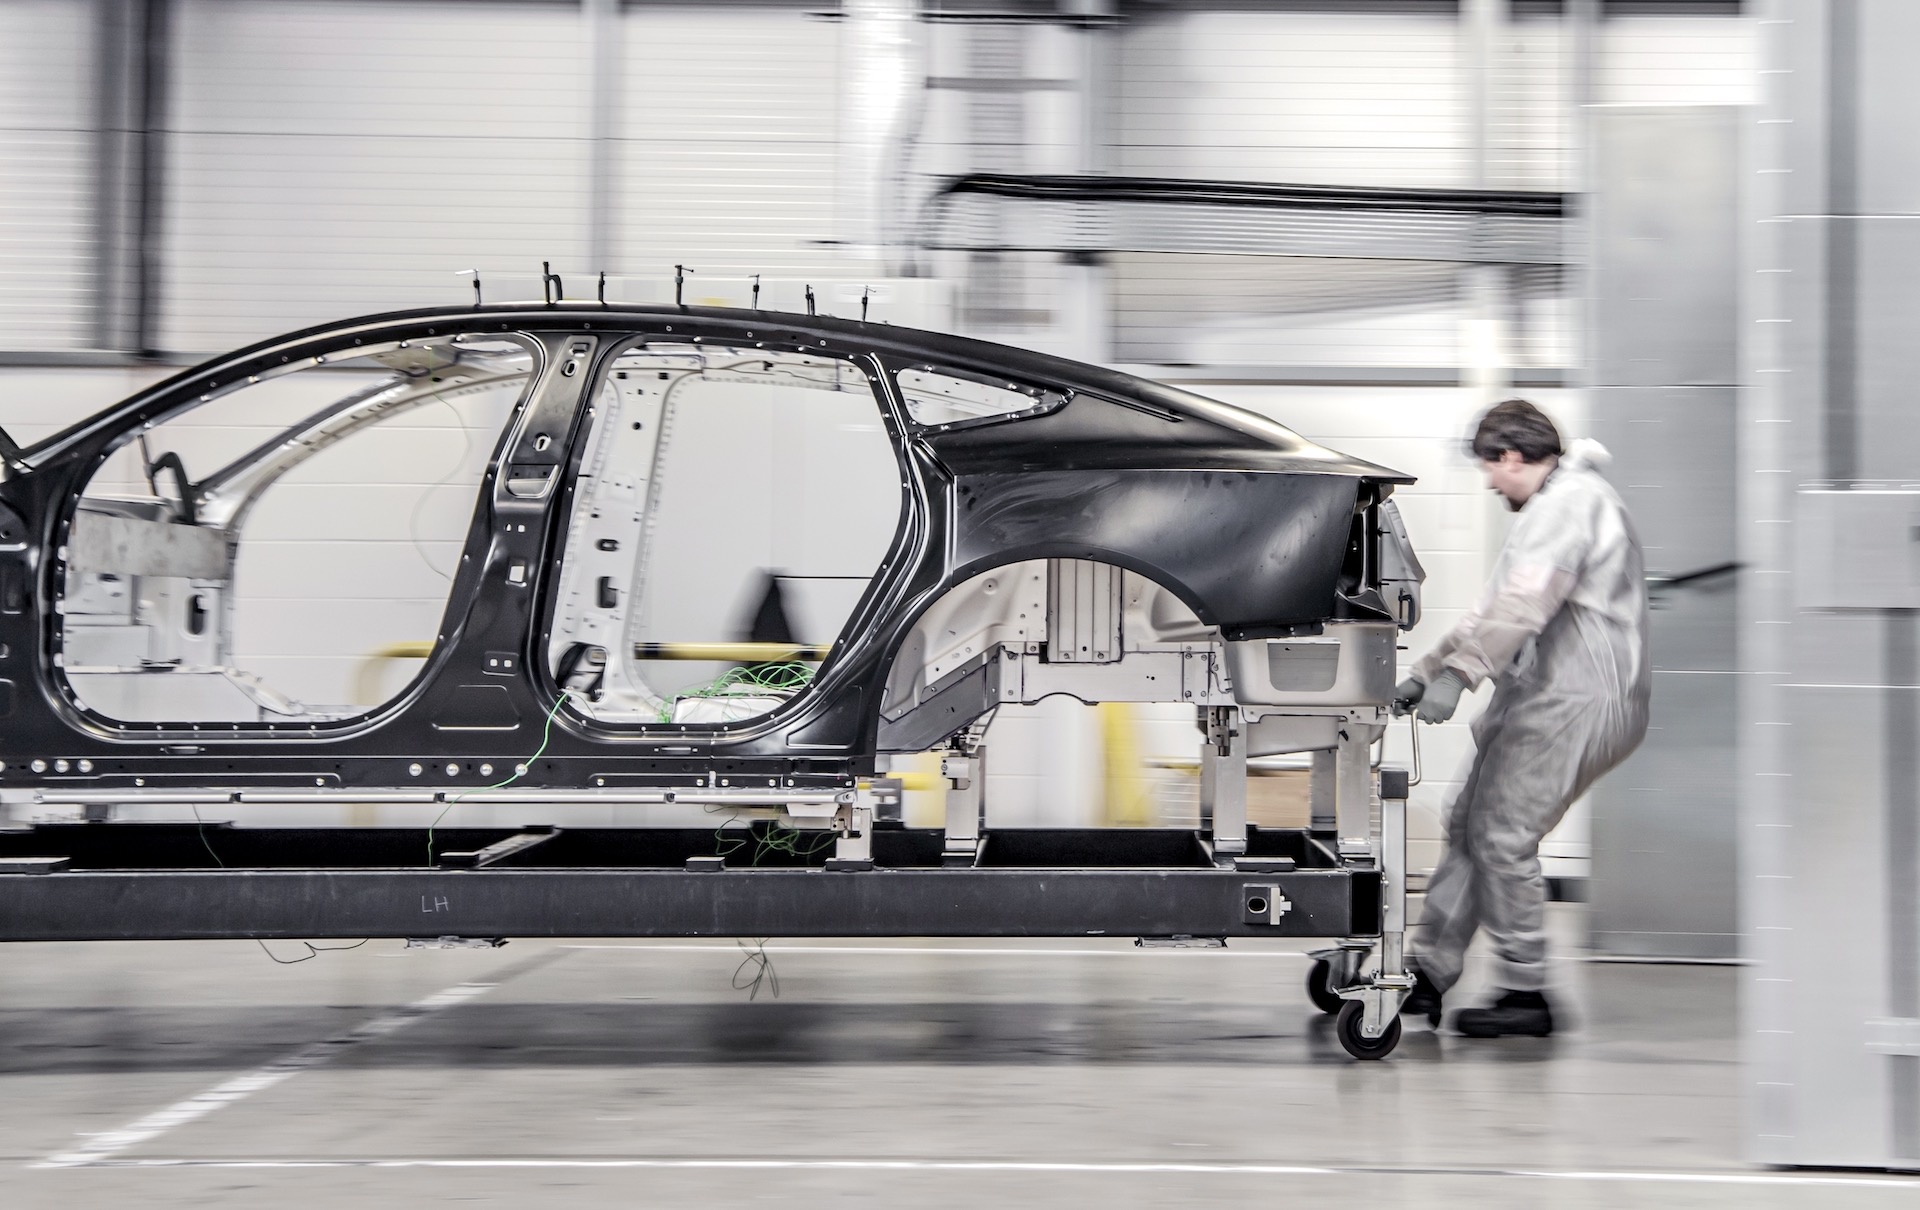 Polestar 5 four-door GT rides on lightweight bonded aluminium platform